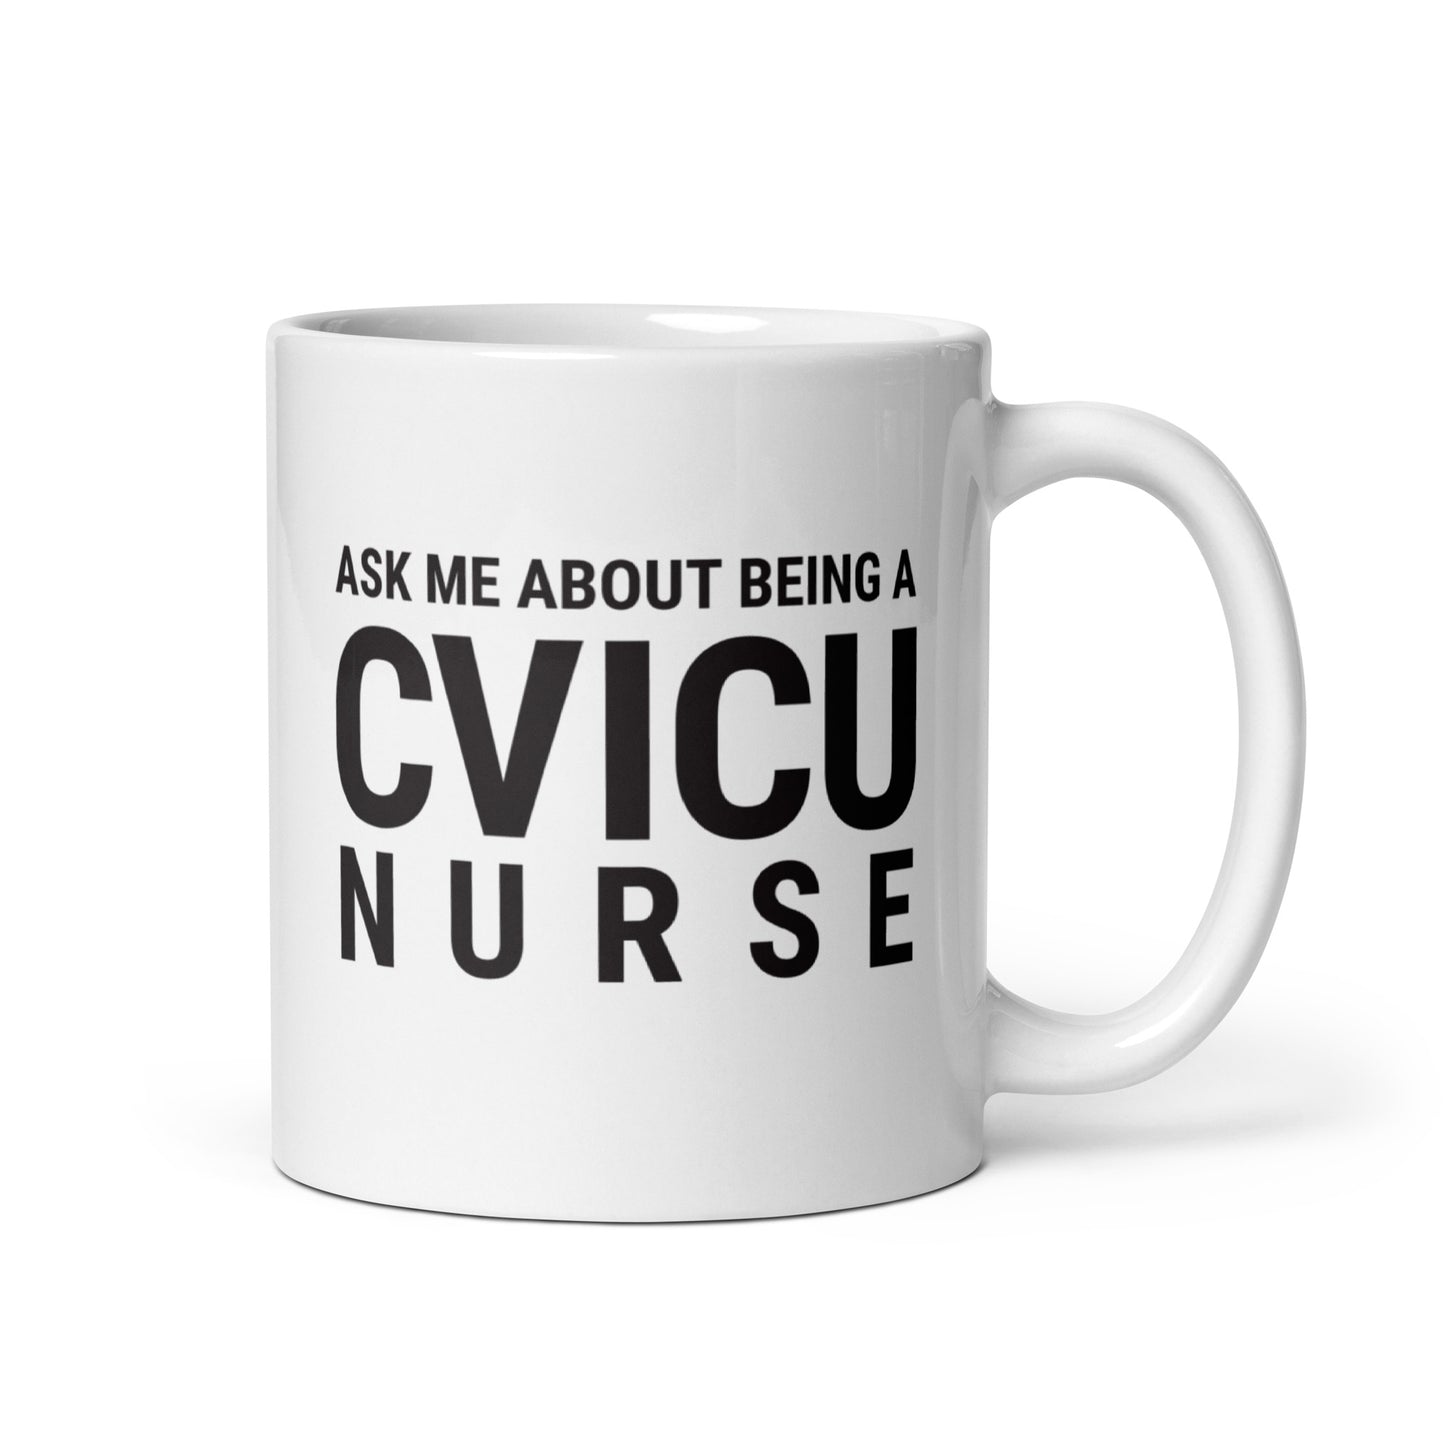 CVICU NURSE Mug